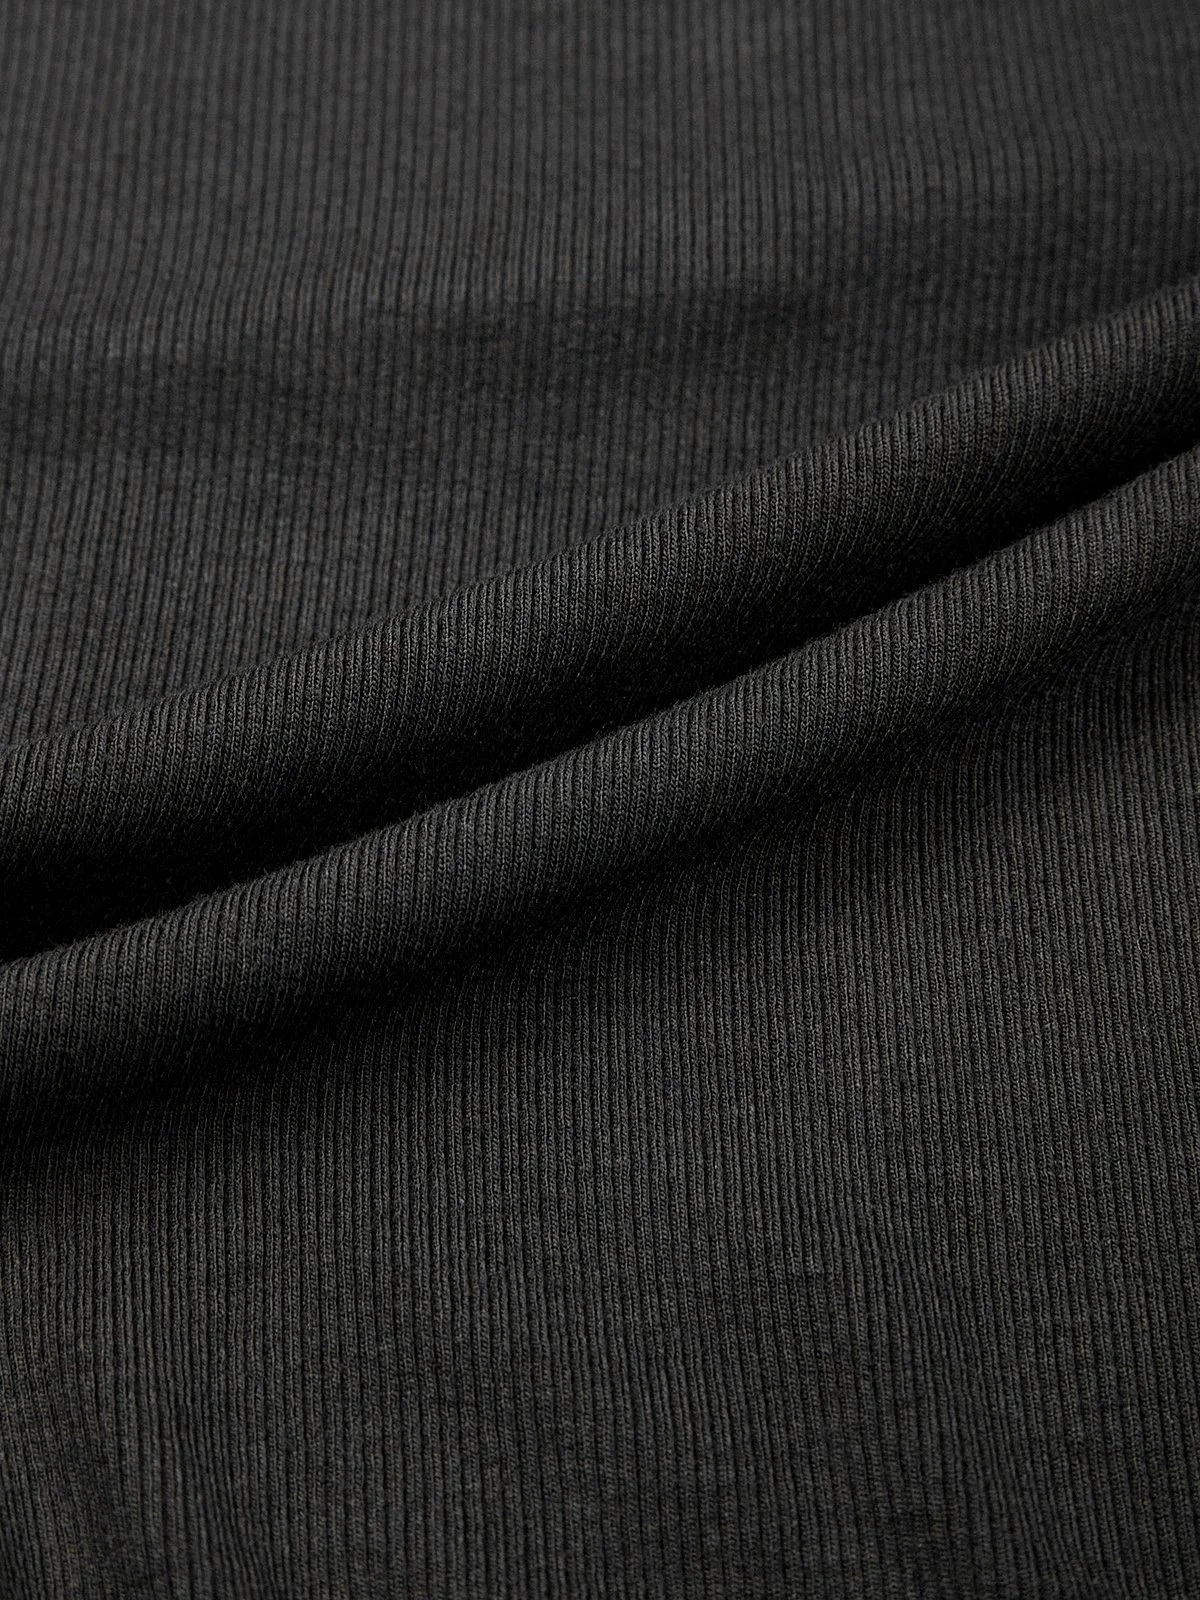 Lace Square Neck Plain Long Sleeve Bodysuit